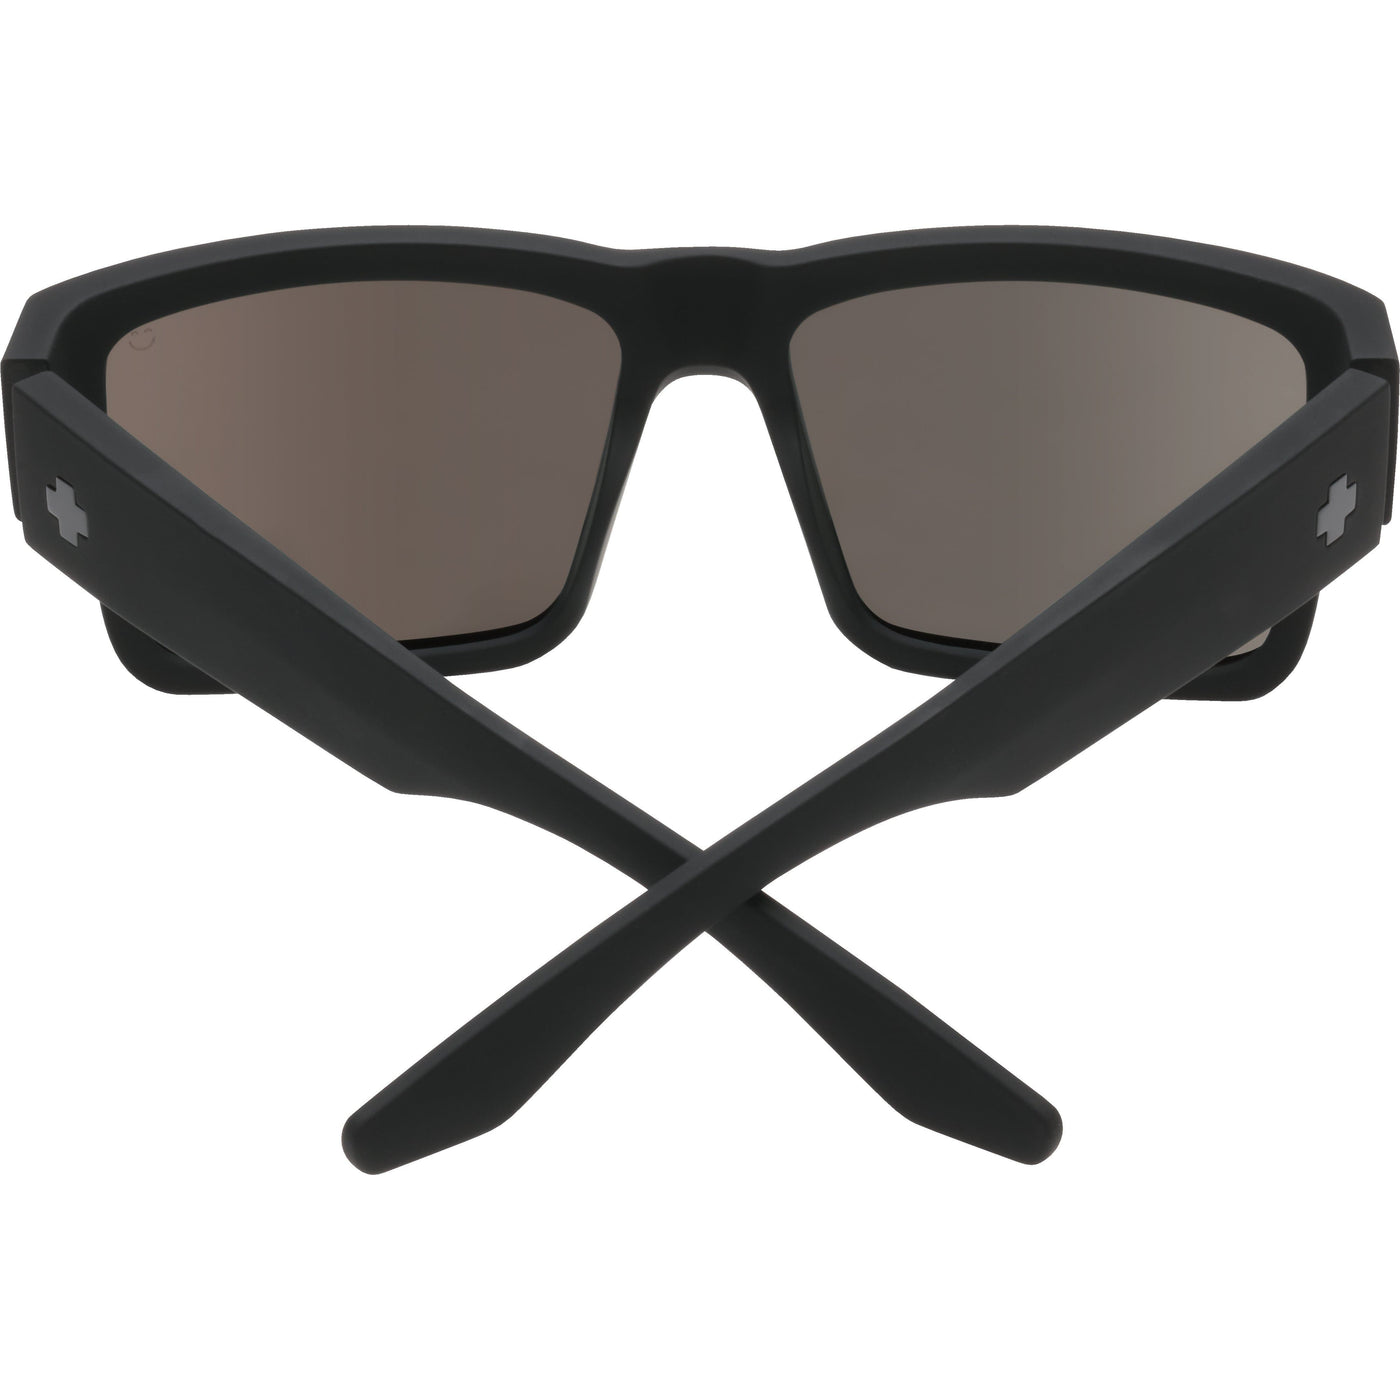 Square-framed sunglasses online